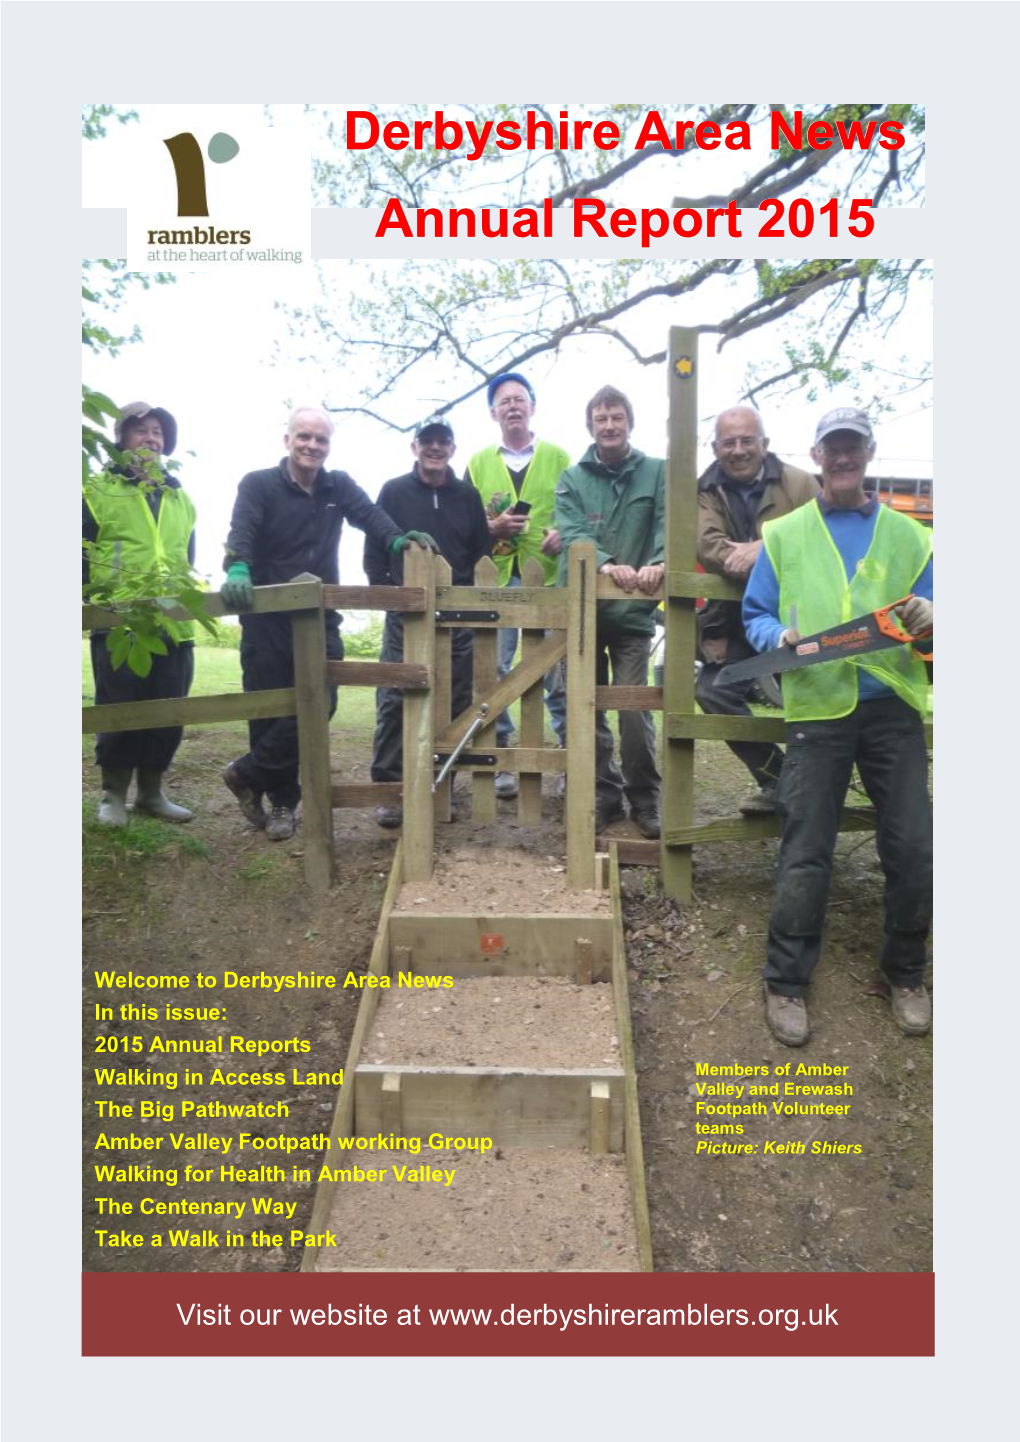 Derbyshire Area News Annual Report 2015